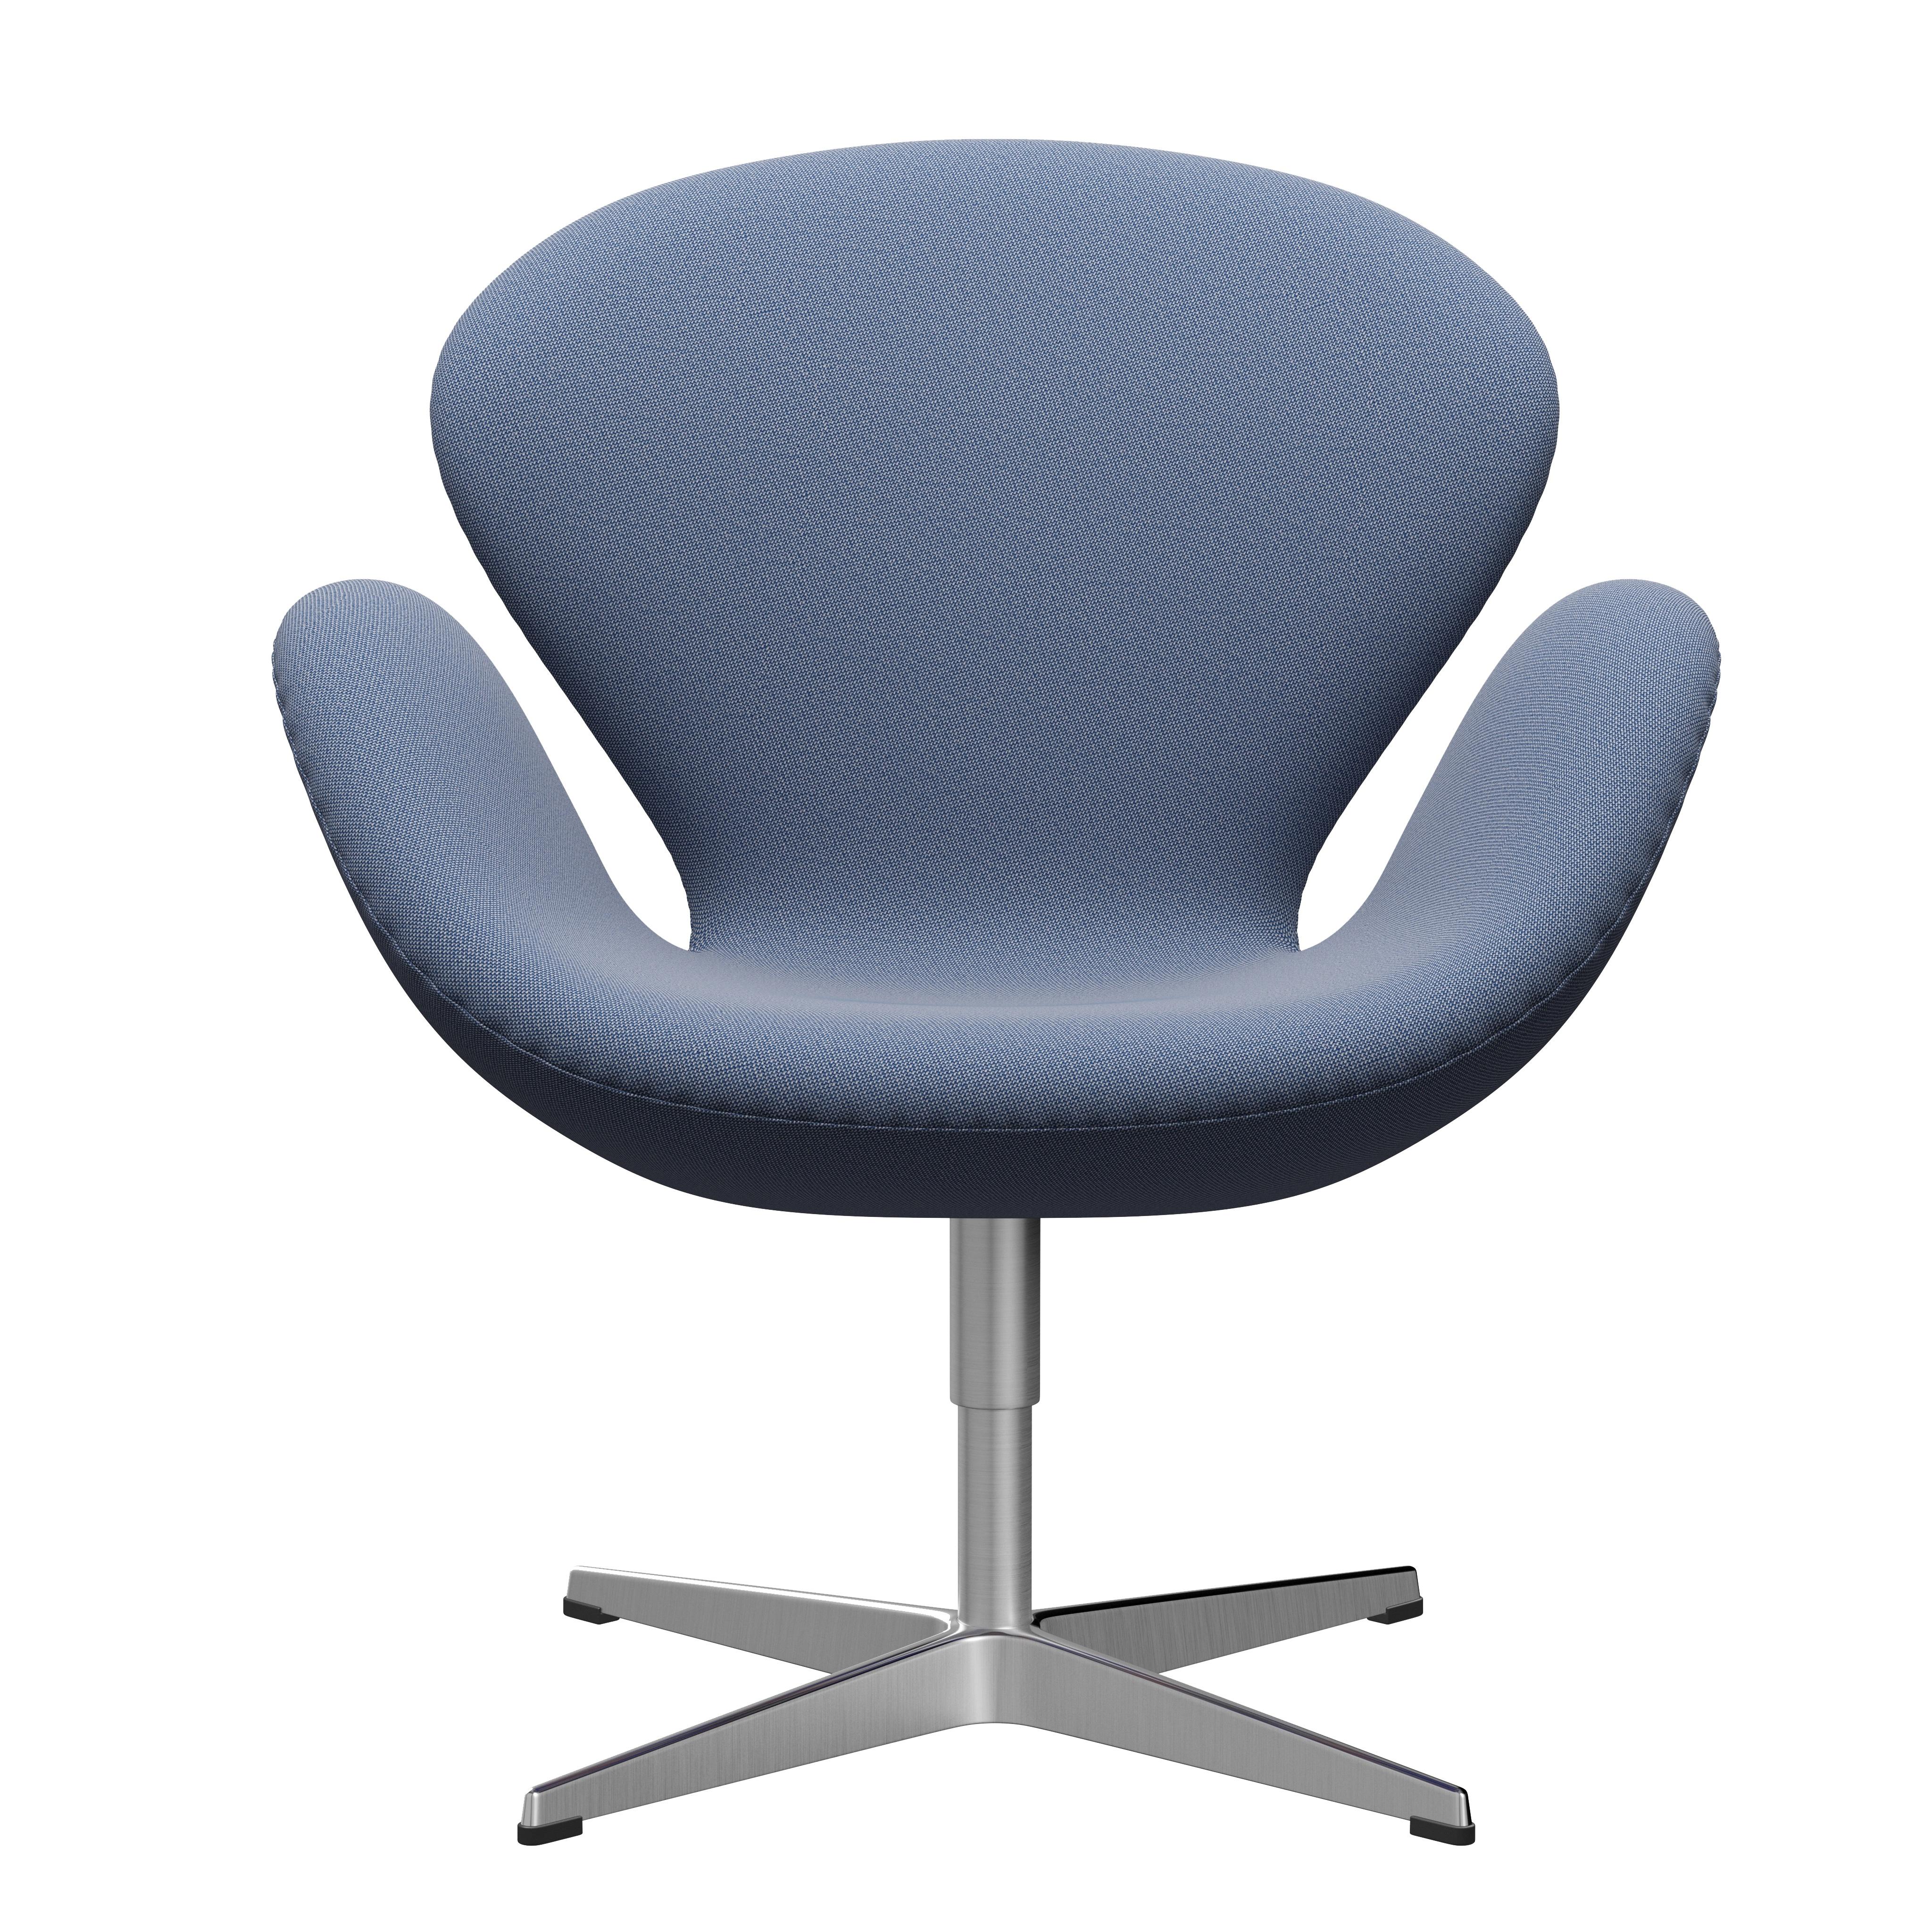 Arne Jacobsen 'Swan' Chair for Fritz Hansen in Fabric Upholstery (Cat. 1) For Sale 9